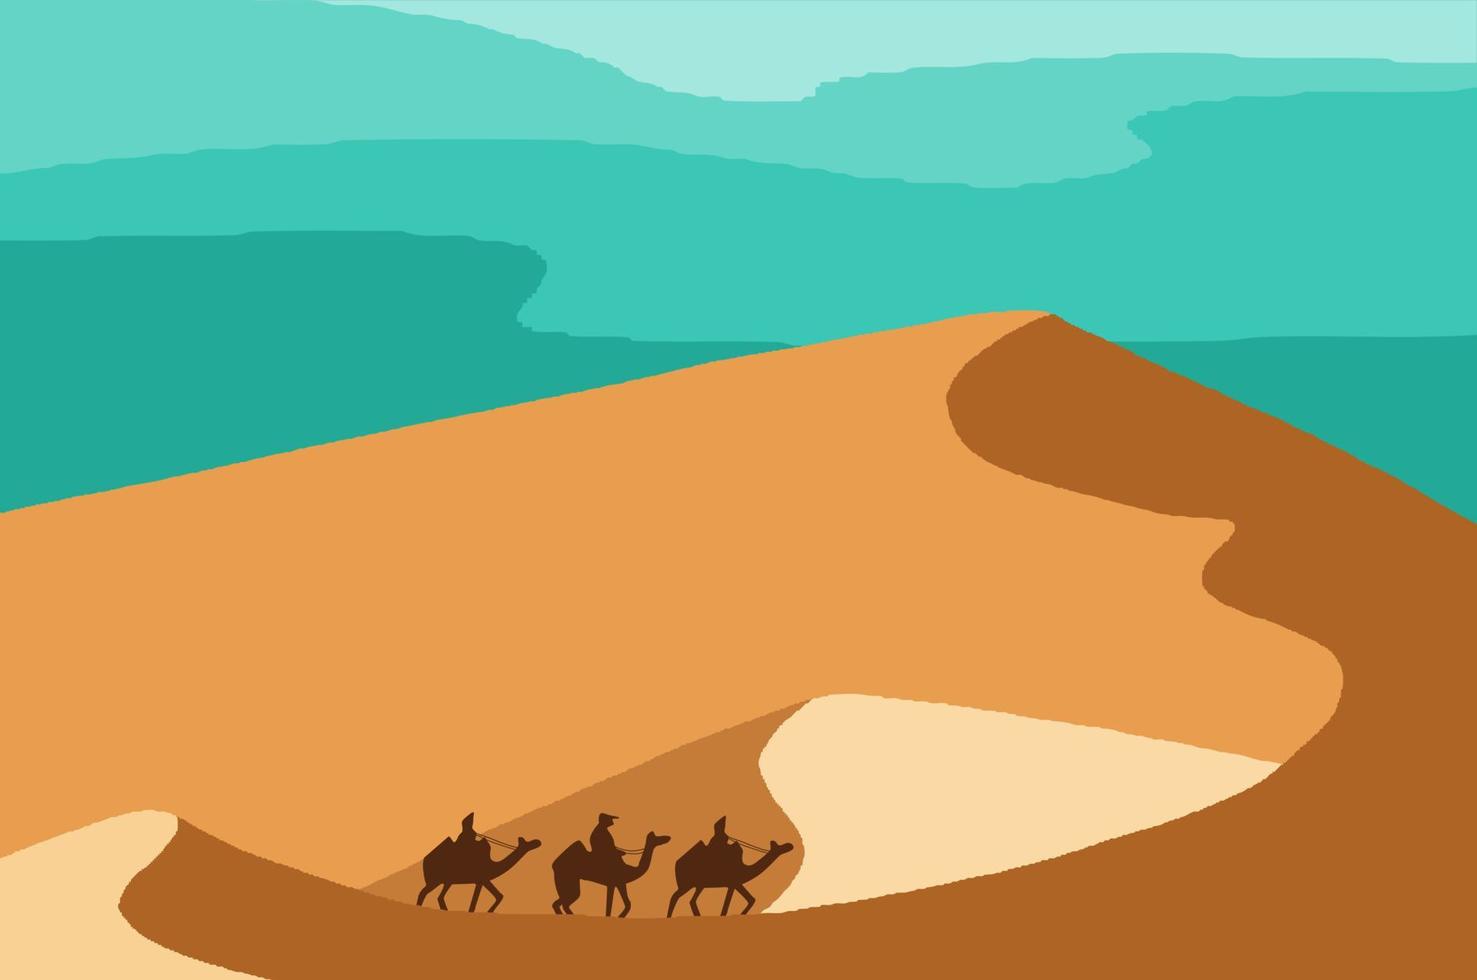 caravana de camelos no design plano de ilustração de paisagem desértica vetor